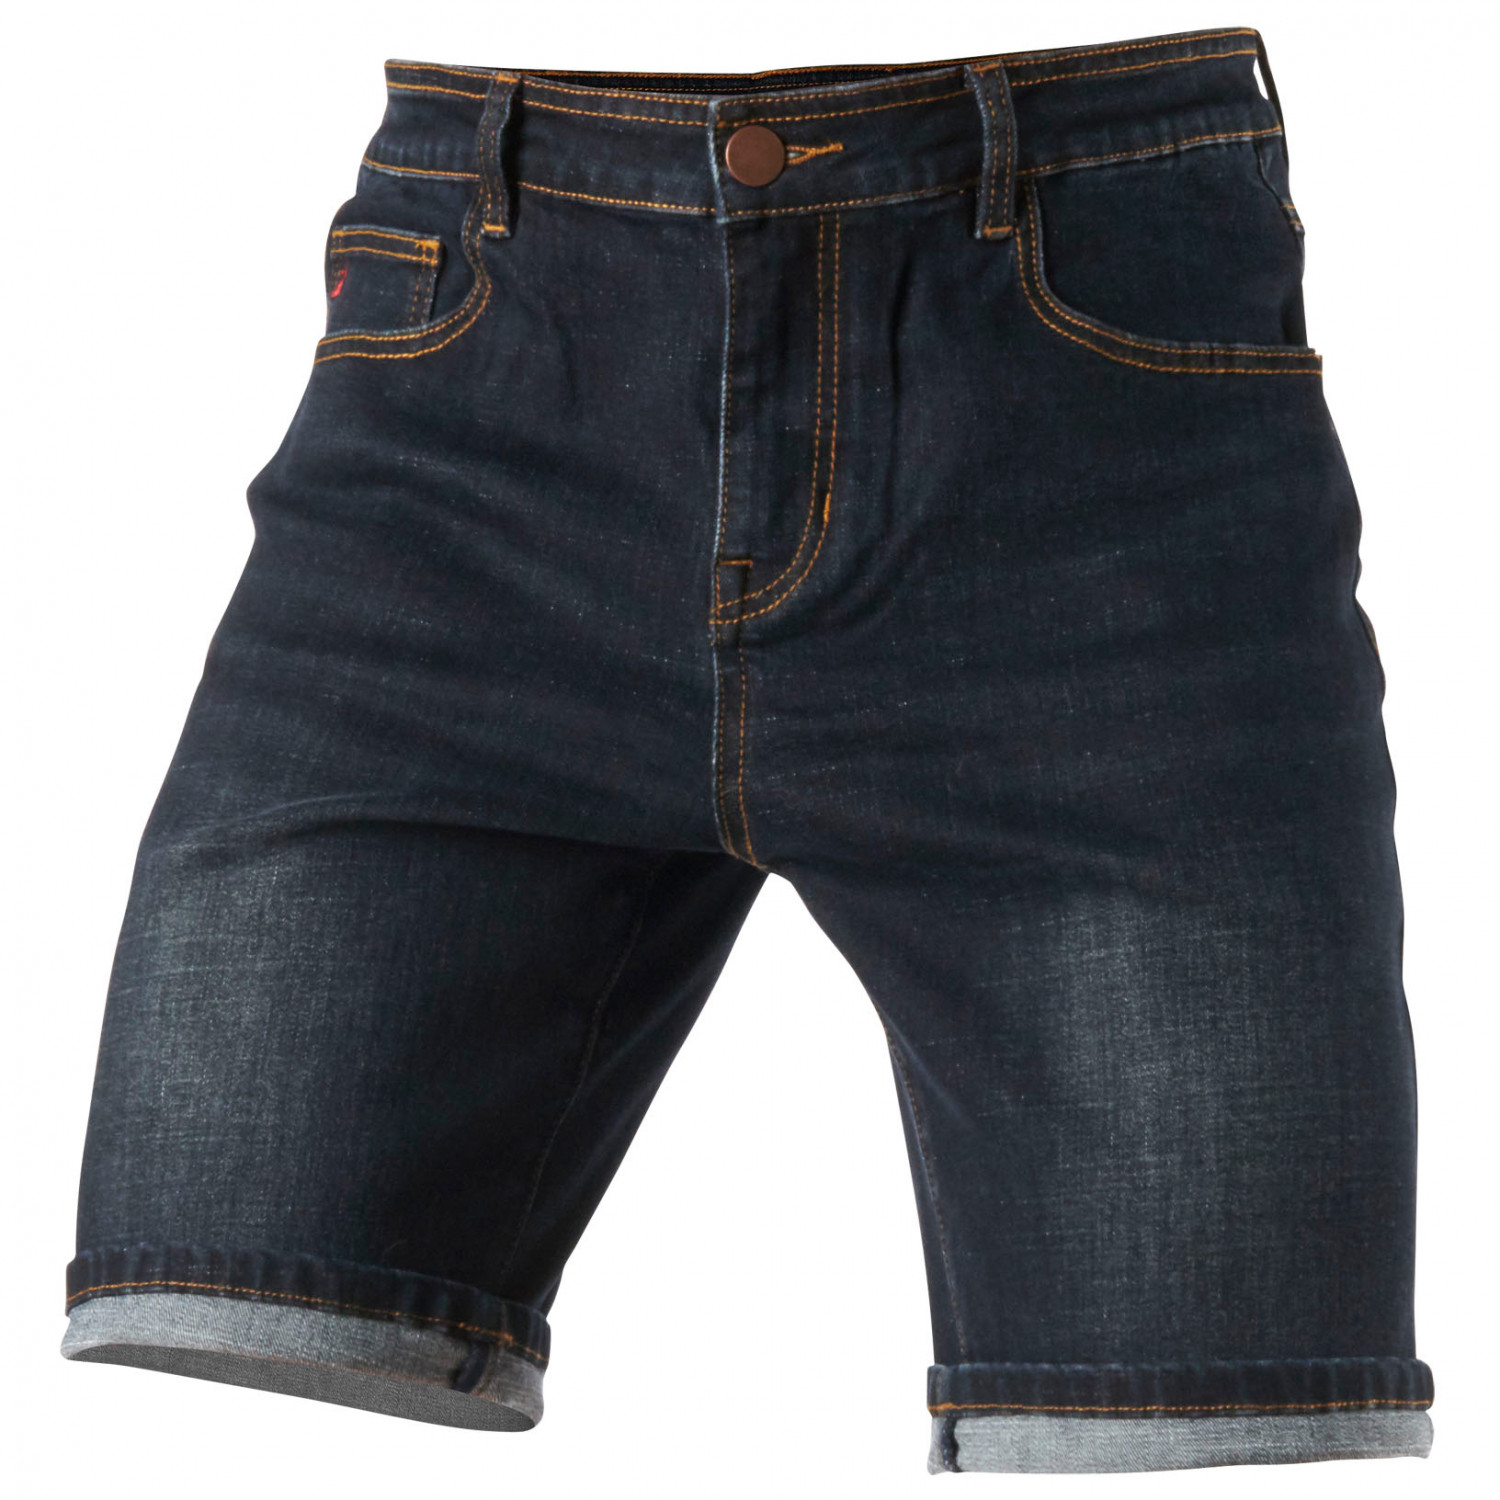 Шорты Zimtstern Bikerz Denim, цвет Dark Denim Blue джинсовые шорты button shorts next цвет denim dark wash